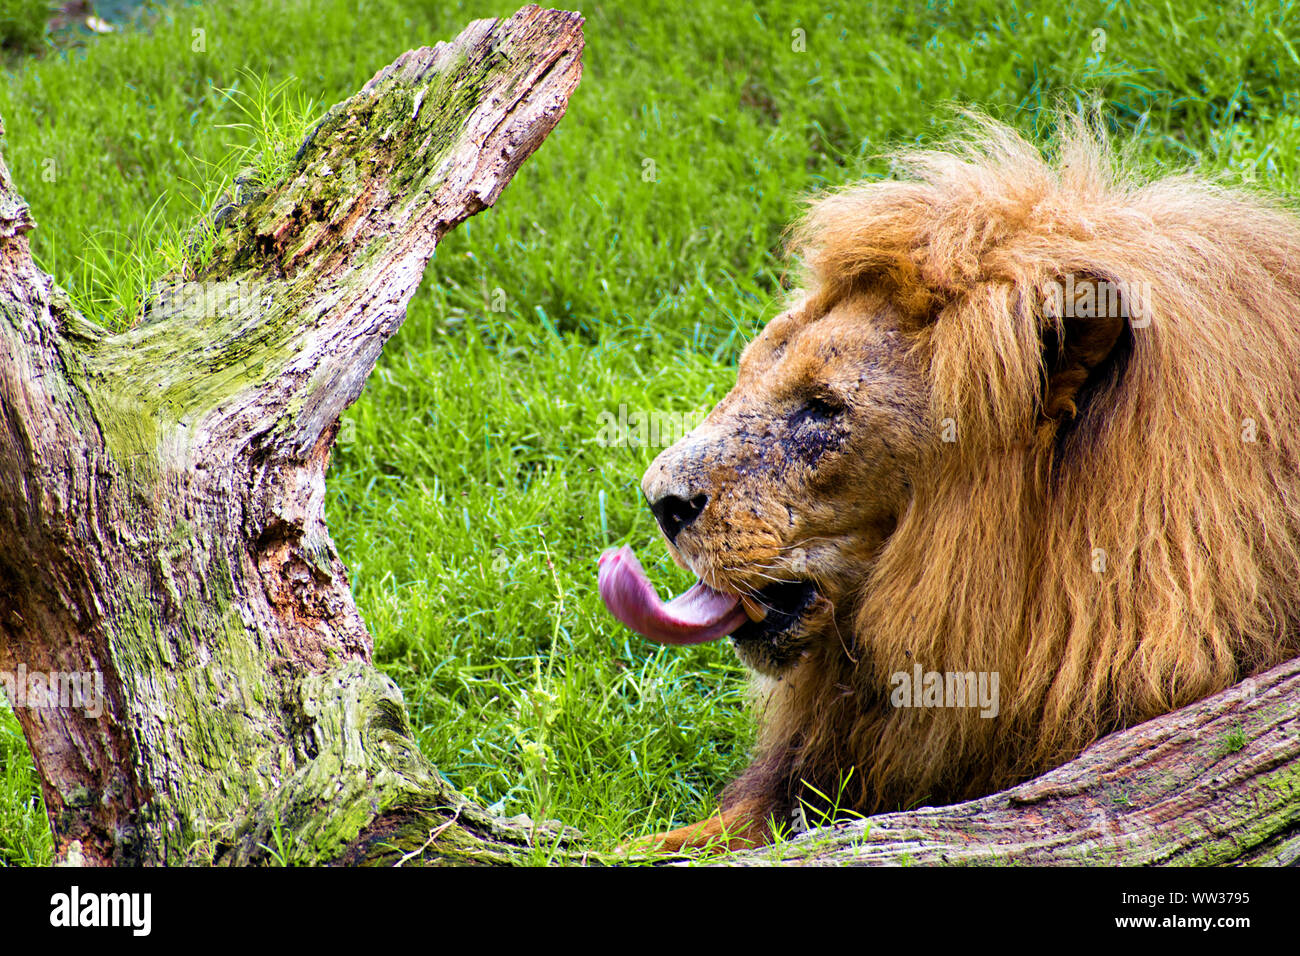 Lion sticking tongue out Banque D'Images